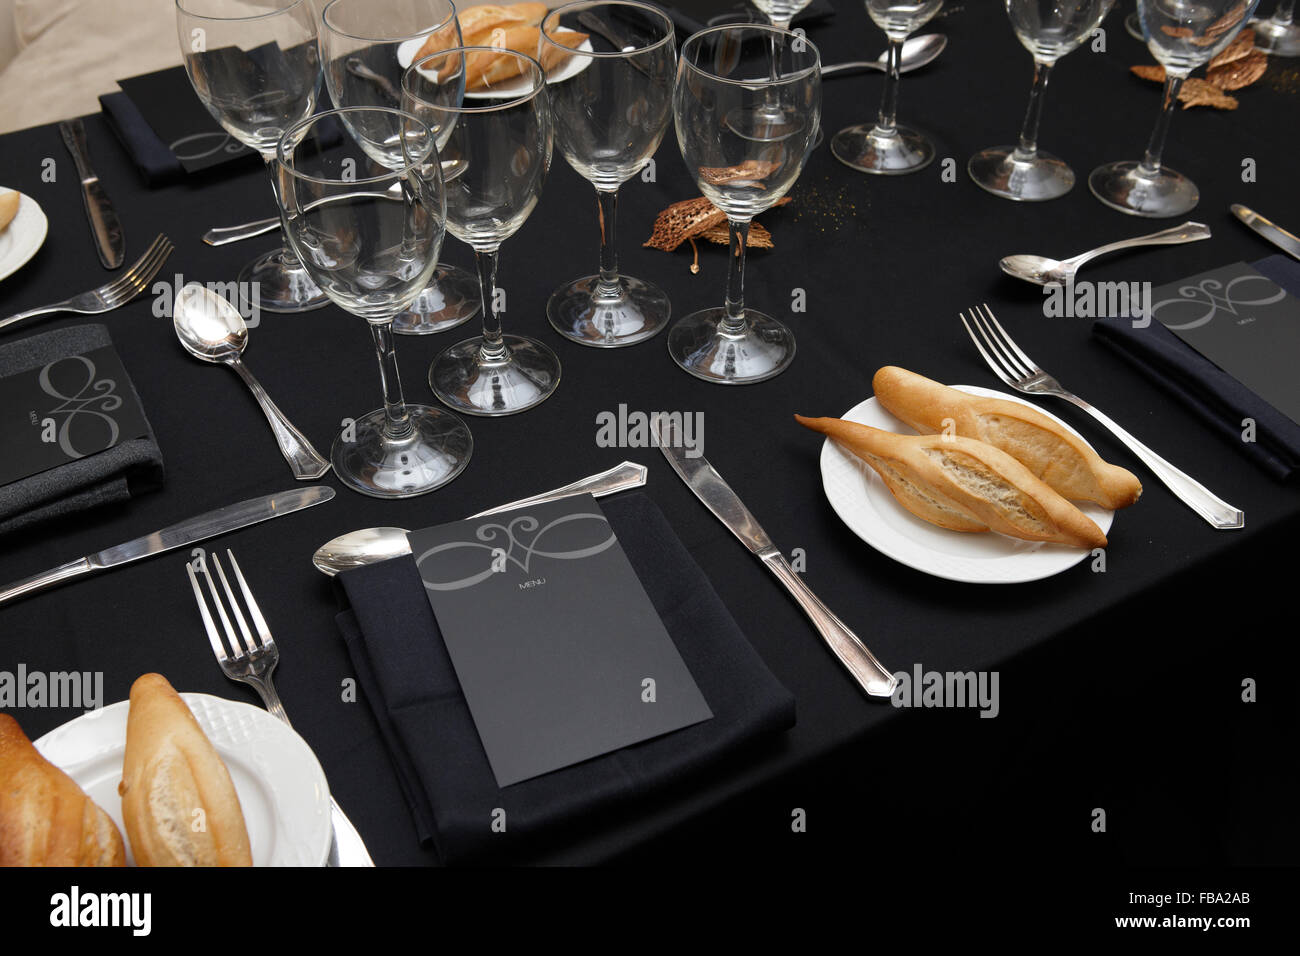 Dans un ensemble de plats de table horizontale noire restaurant Banque D'Images